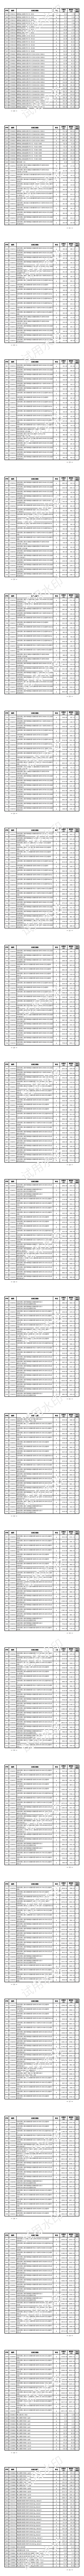 上海水务工程价格信息（2023年11月第十期）_01.png